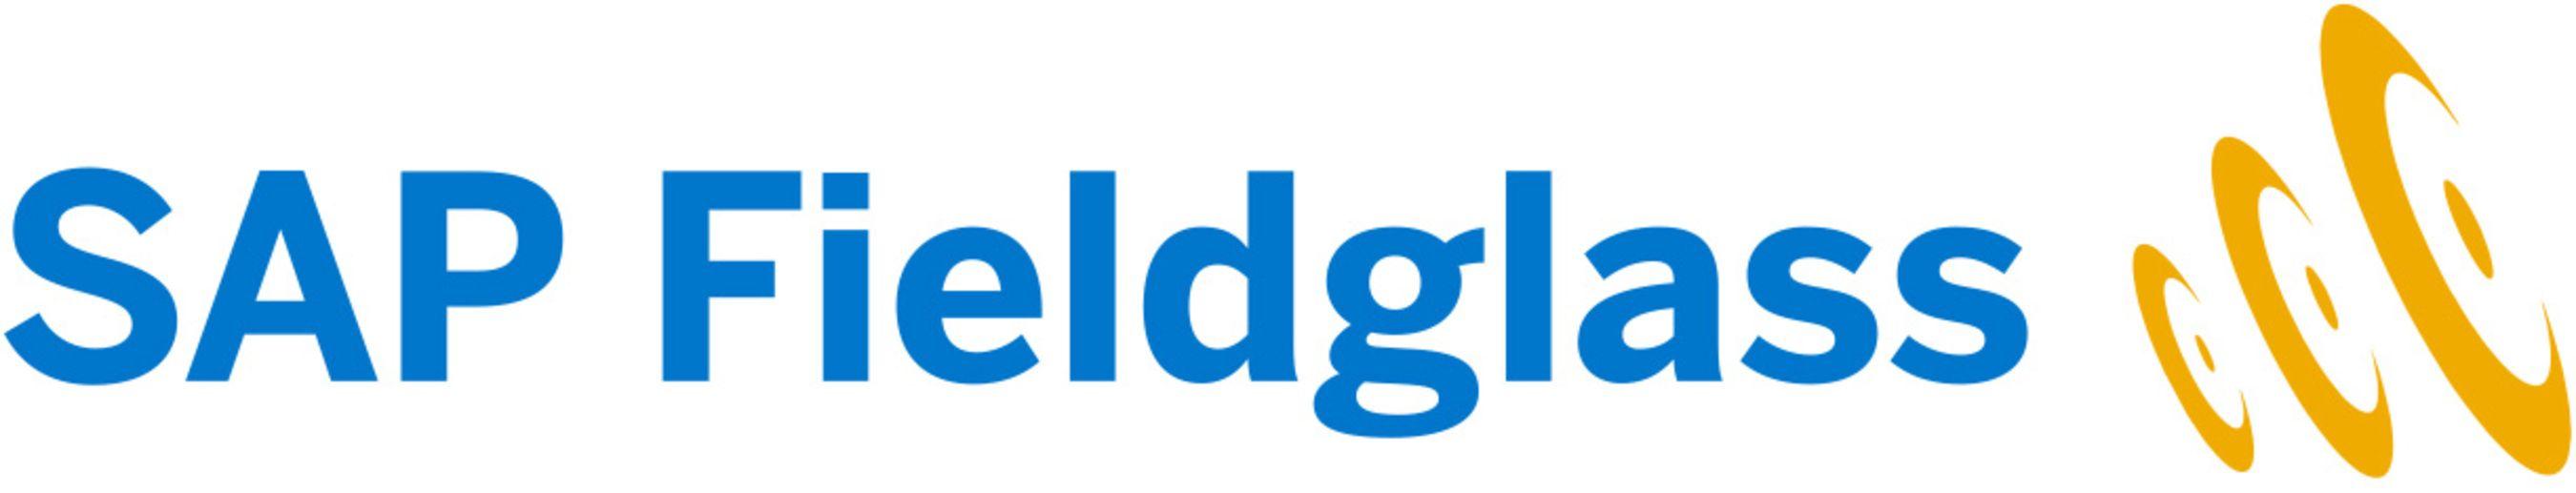 Fieldglass Logo - Ardent Partners, SAP Fieldglass Study: Vendor Management Systems ...